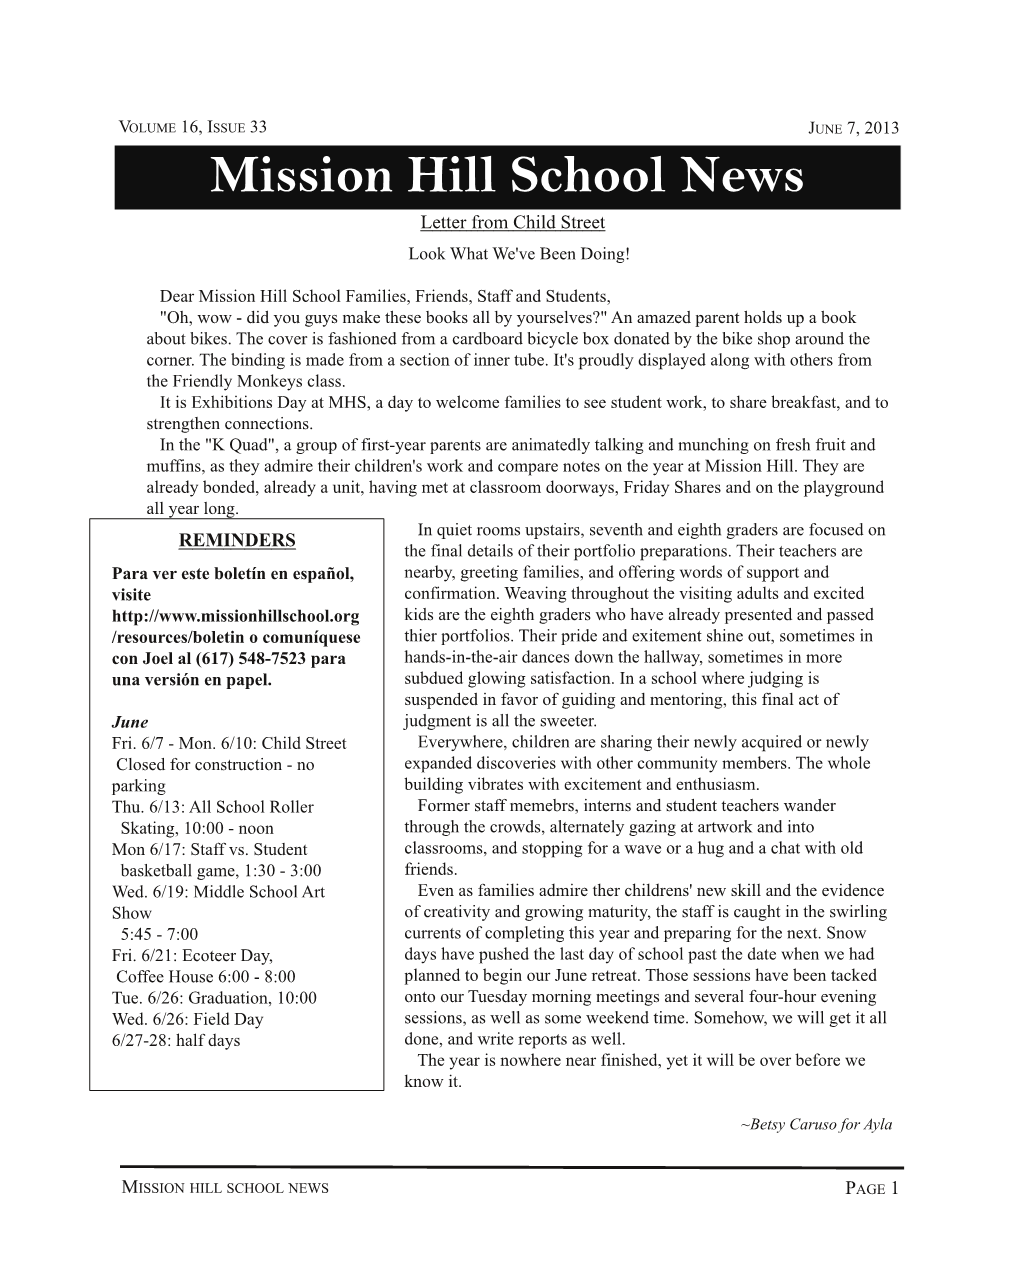 MHS News: June 7, 2013